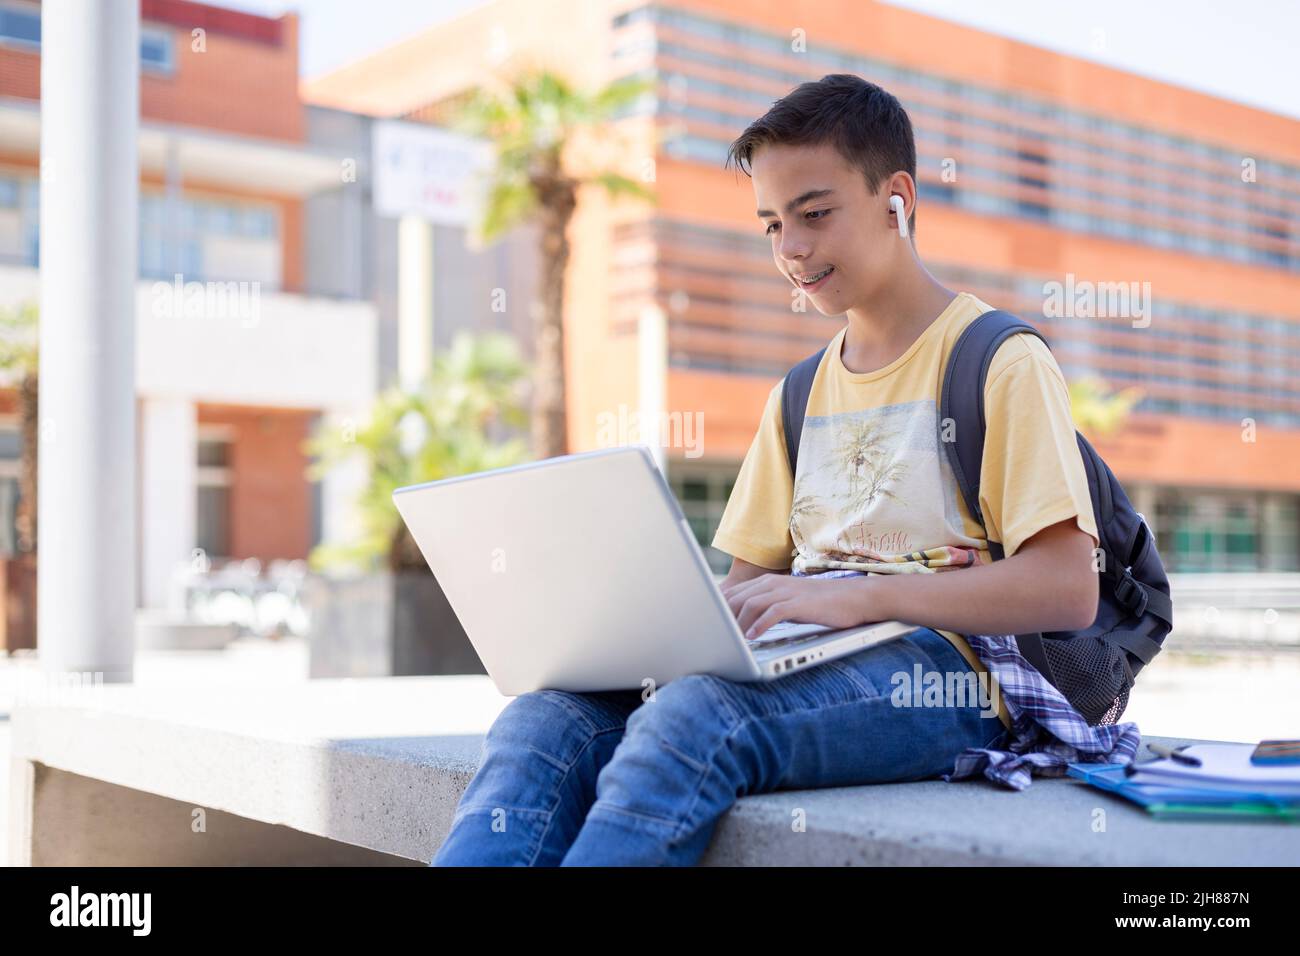 Souriant garçon caucasien étudiant avec un ordinateur portable à l'extérieur. Enseignement secondaire. Espace pour le texte. Banque D'Images